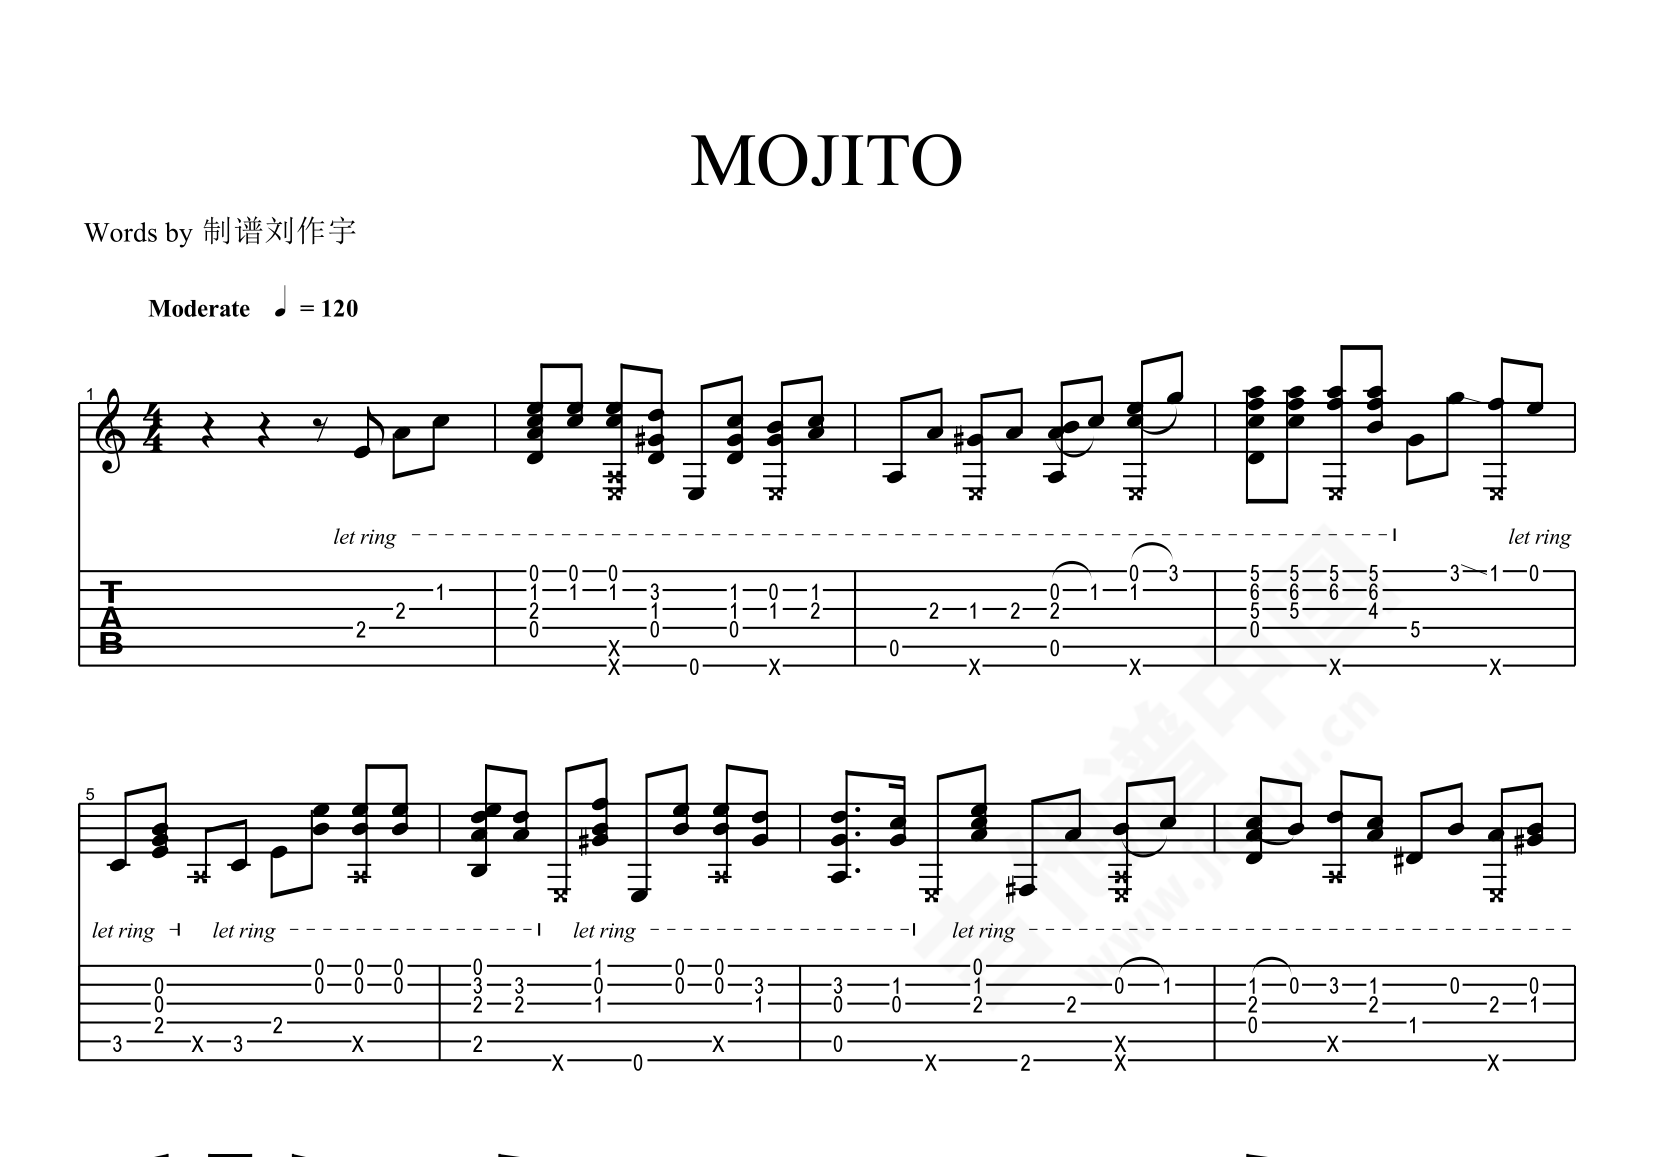 生日快乐歌-爵士版五线谱预览1-钢琴谱文件（五线谱、双手简谱、数字谱、Midi、PDF）免费下载